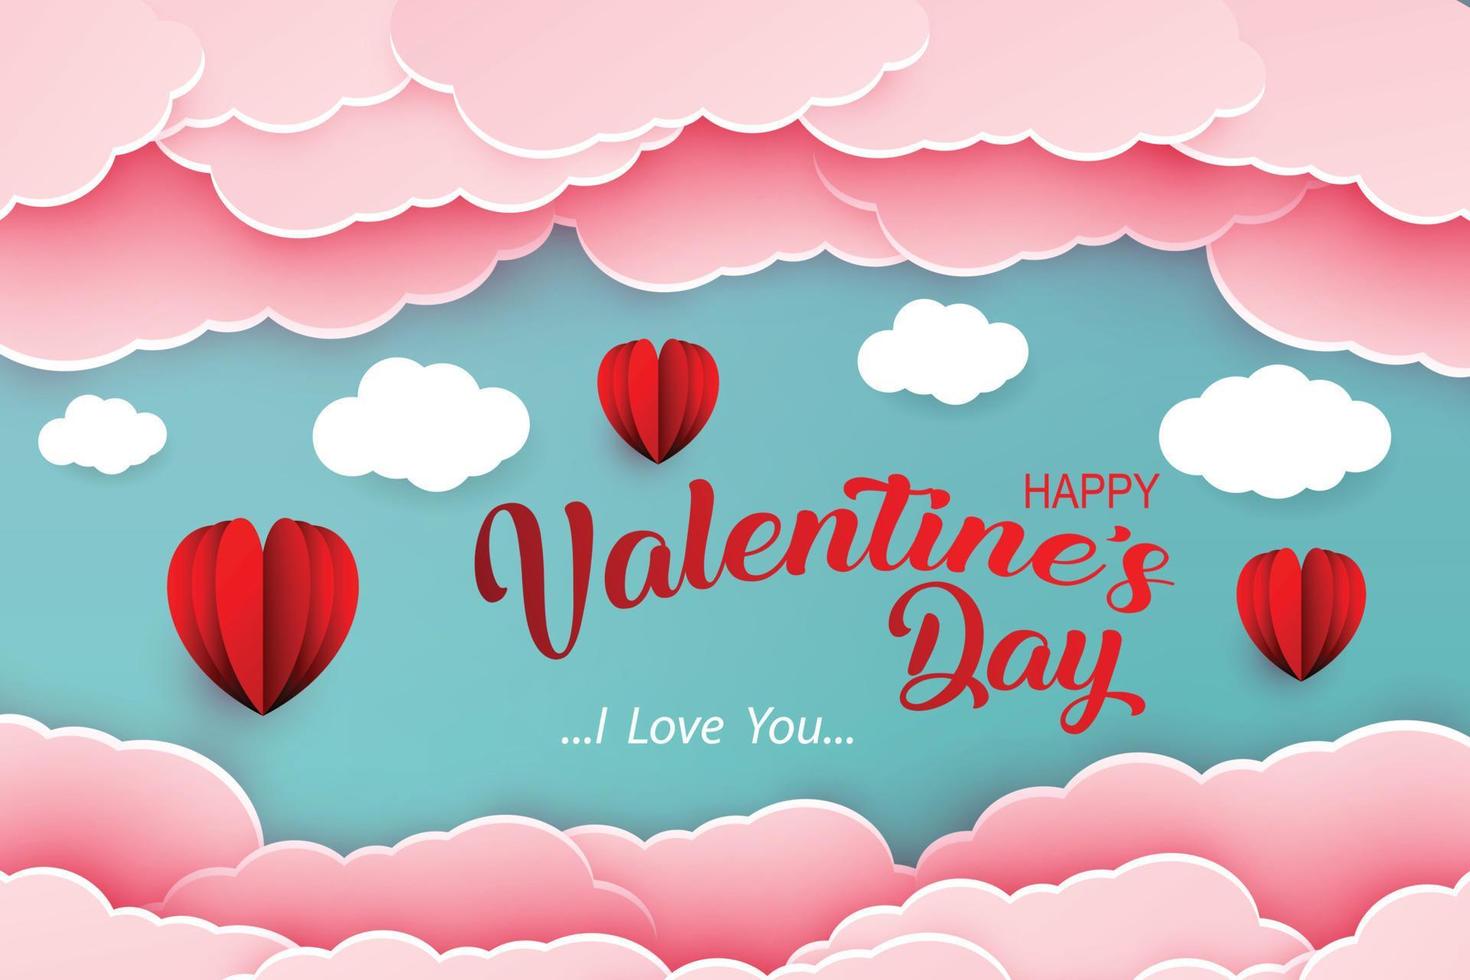 felice giorno di San Valentino disegno vettoriale con forma di cuore rosso tagliato su carta.illustrazione vettoriale.